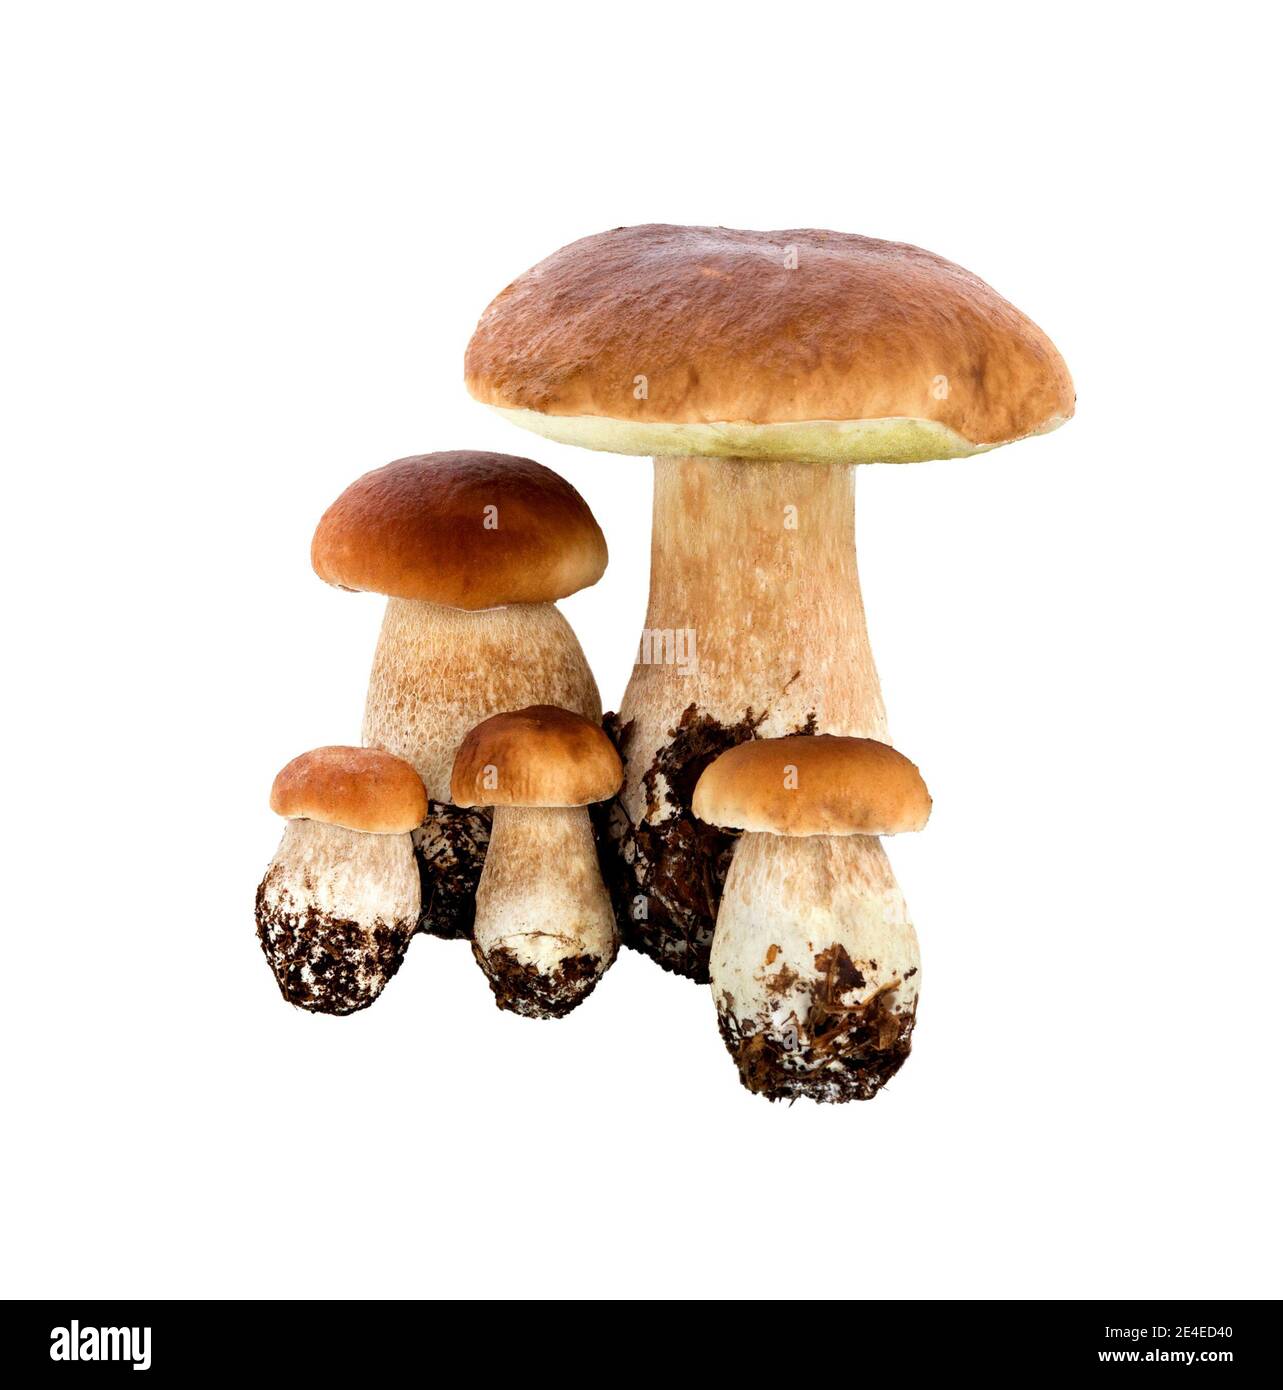 Funghi di bosco - Boletus edulis, isolato su sfondo bianco. Ceps o funghi porcini. Foto Stock